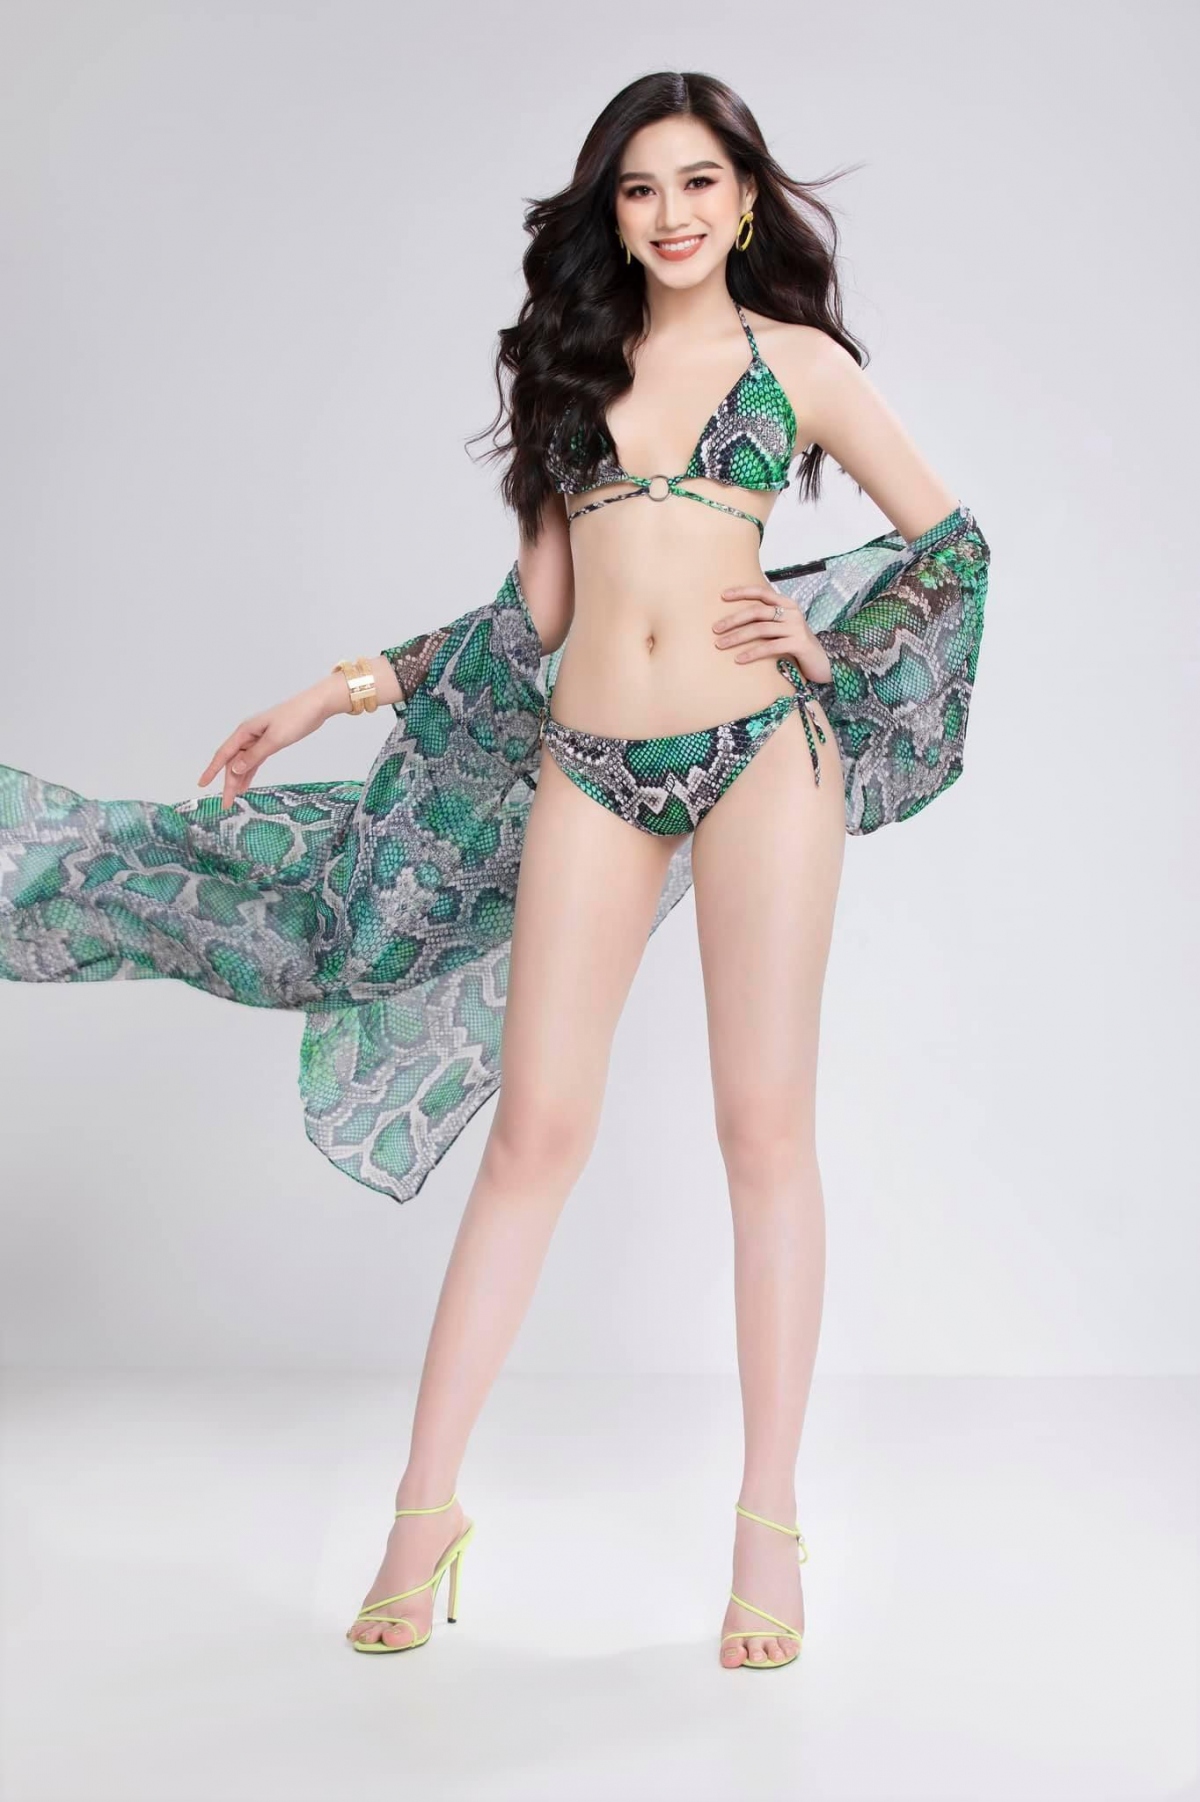 Hoa hậu Đỗ Thị Hà nóng bỏng trong bộ ảnh bikini họa tiết da rắn